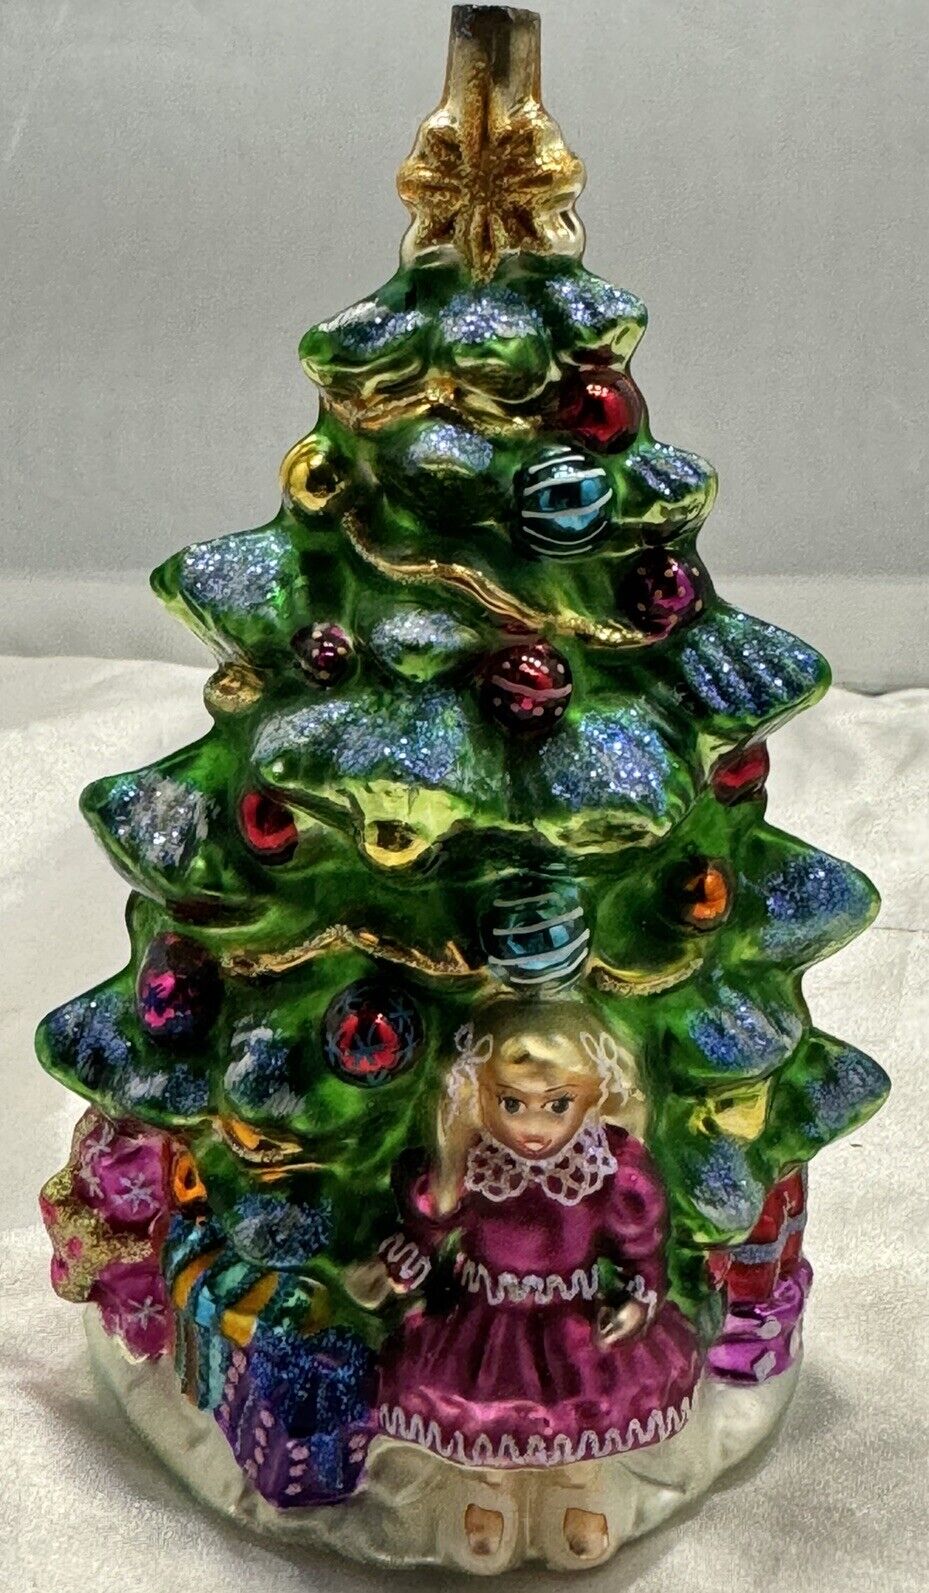 Christopher Radko A LITTLE GIRL'S DREAM Christmas Tree Ornament Marie Osmond